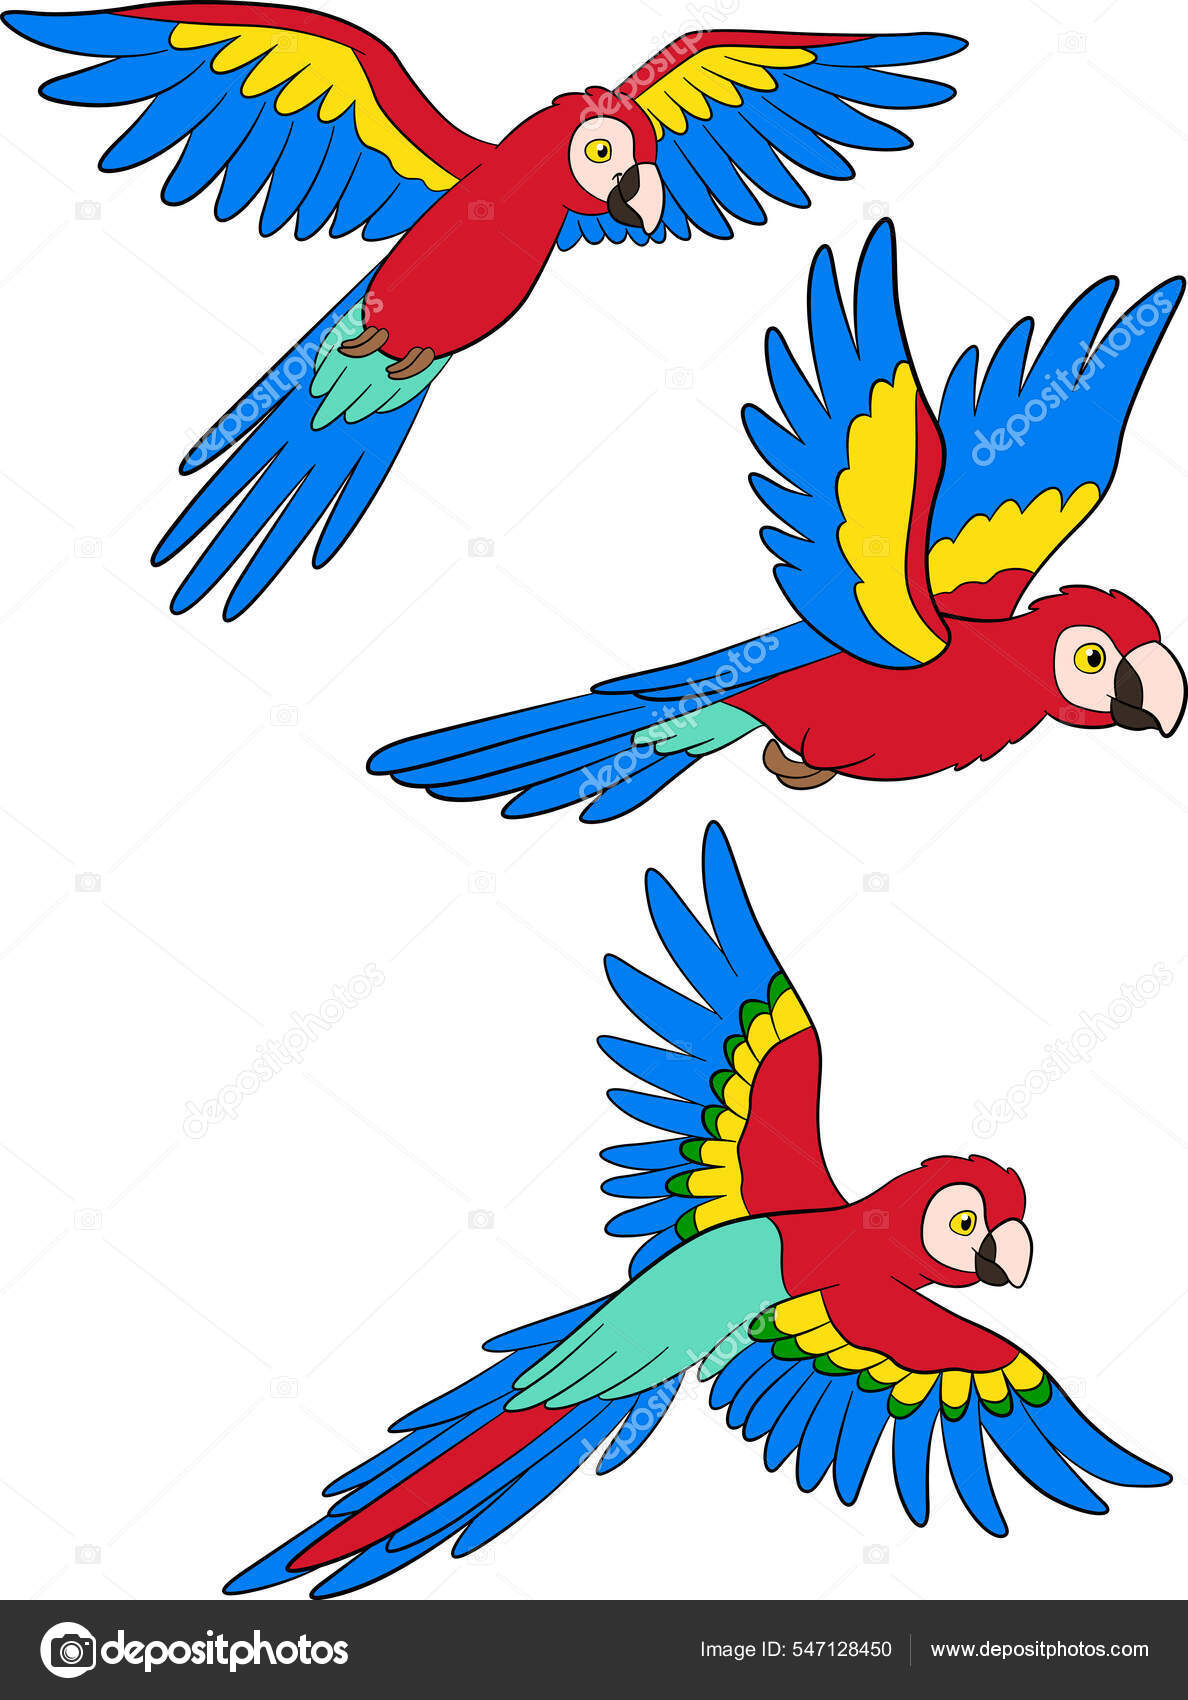 Desenhos para Colorir pintar e imprimir  Desenhos para colorir, Desenho de  papagaio, Boca para colorir